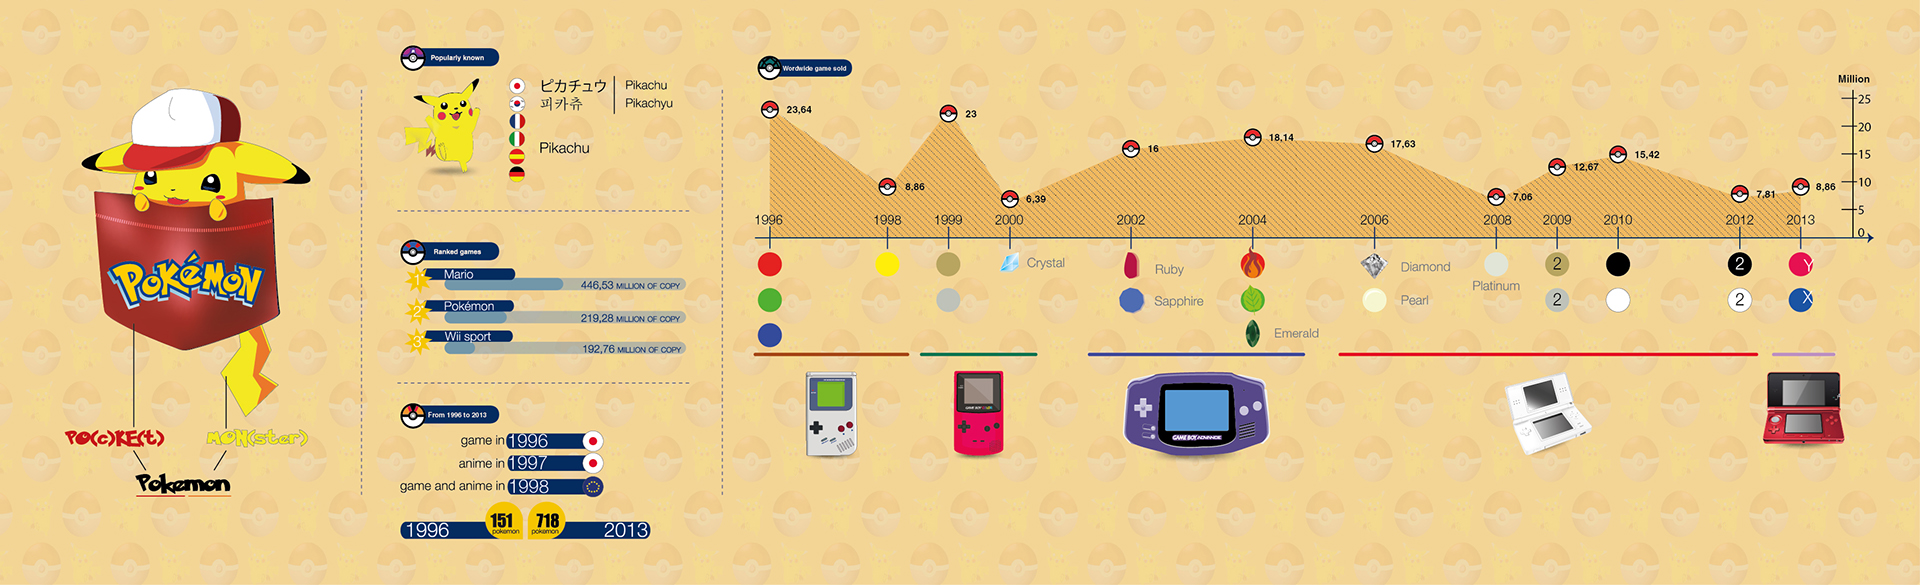 Infografica evoluzione Pokemon